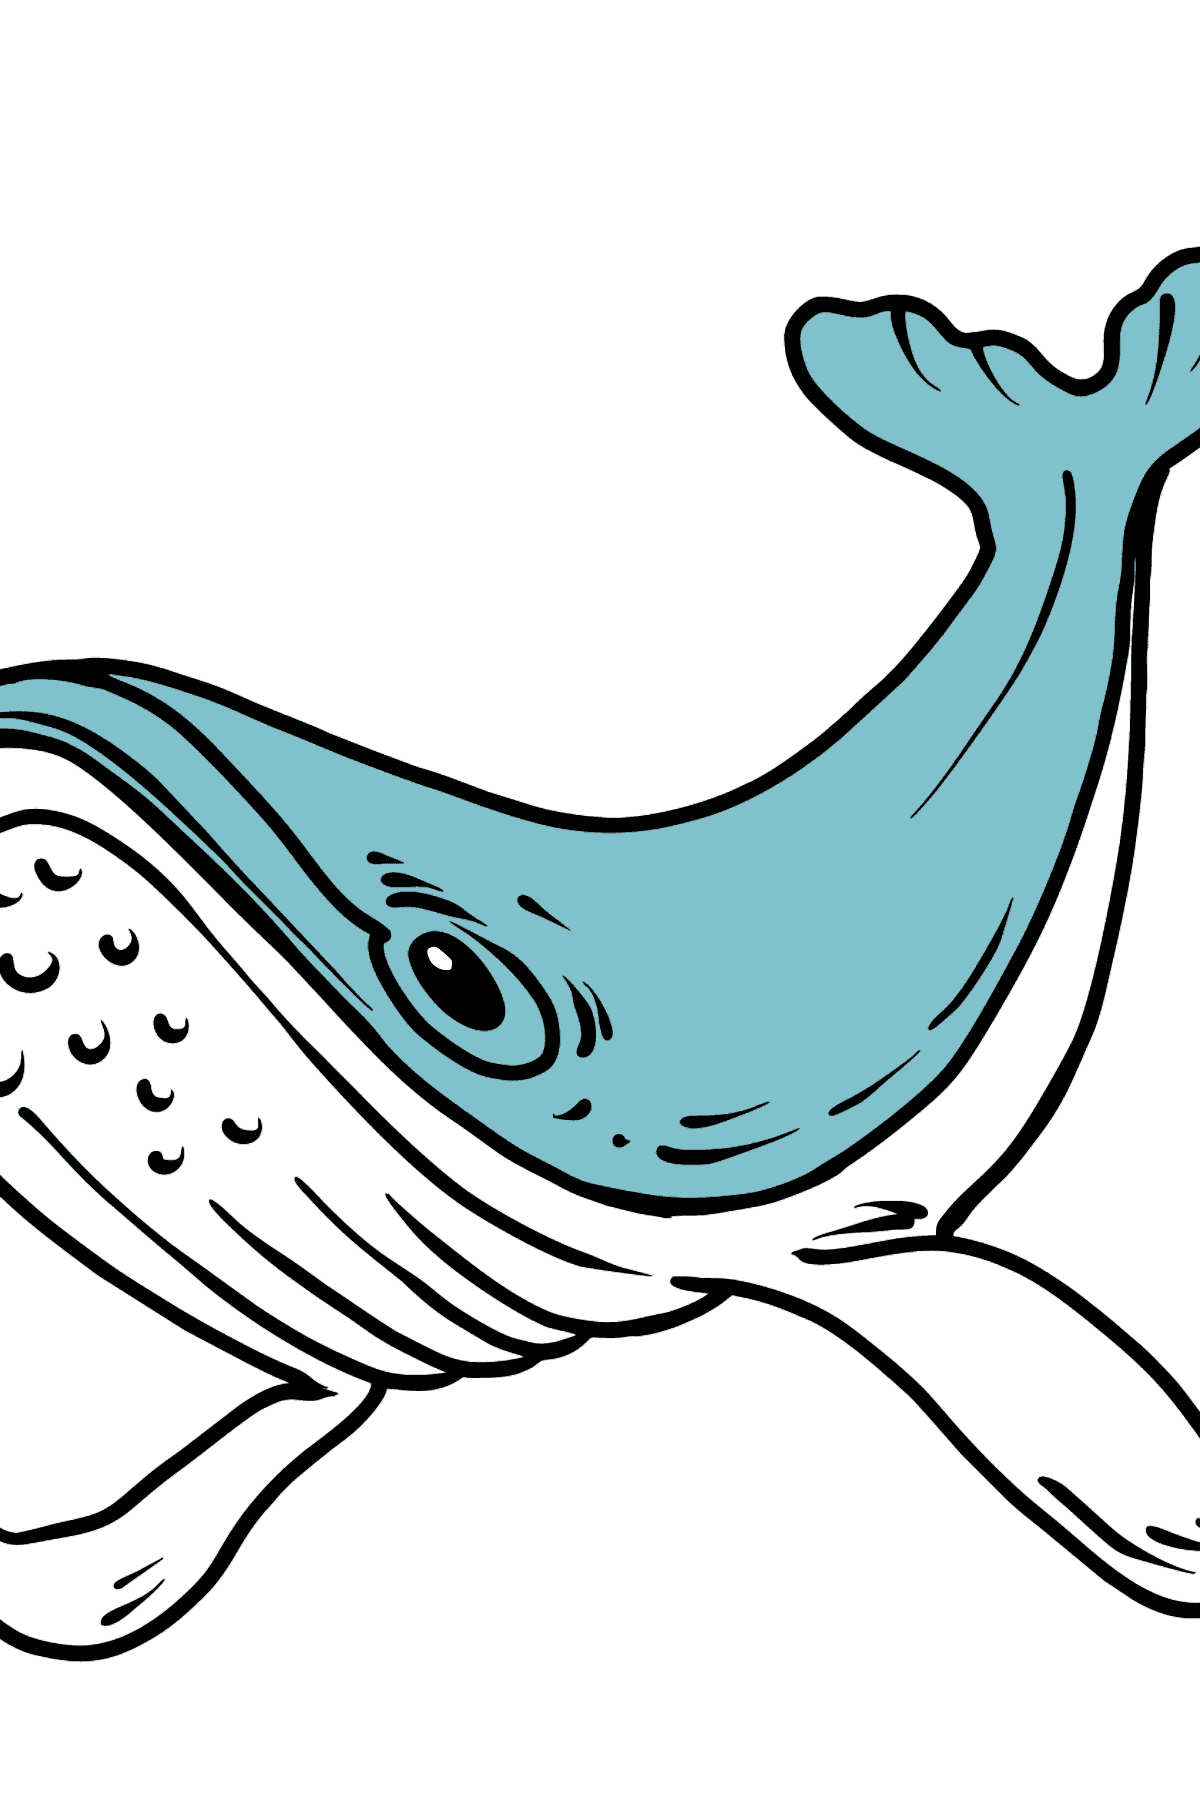 Boyama sayfası balina - Boyamalar çocuklar için